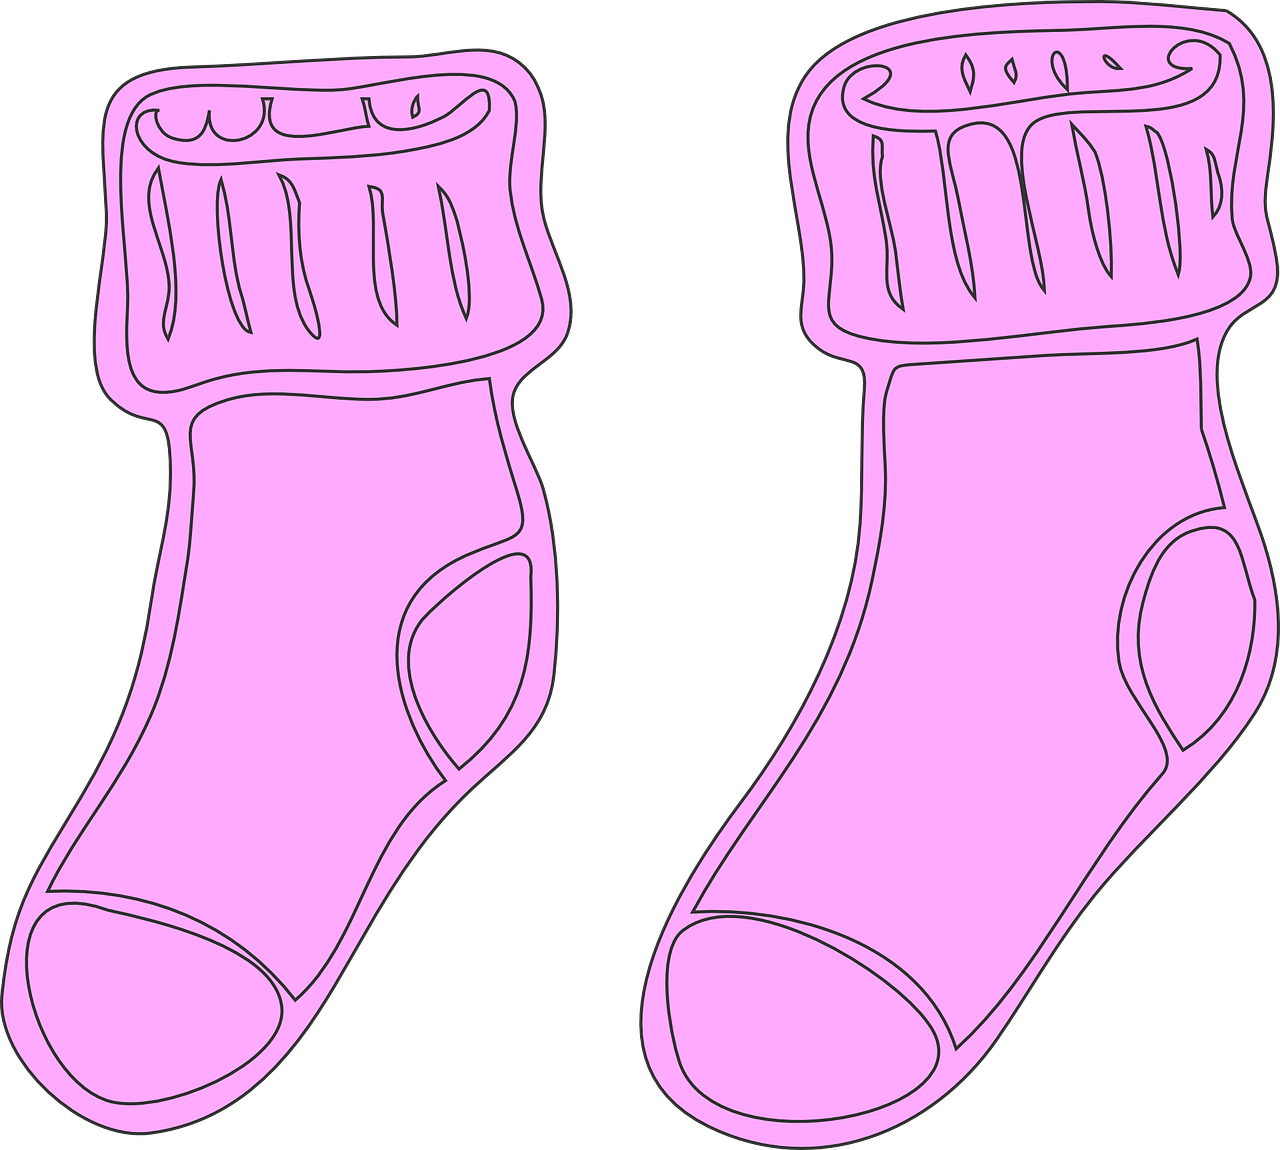 socks stockings pink free photo